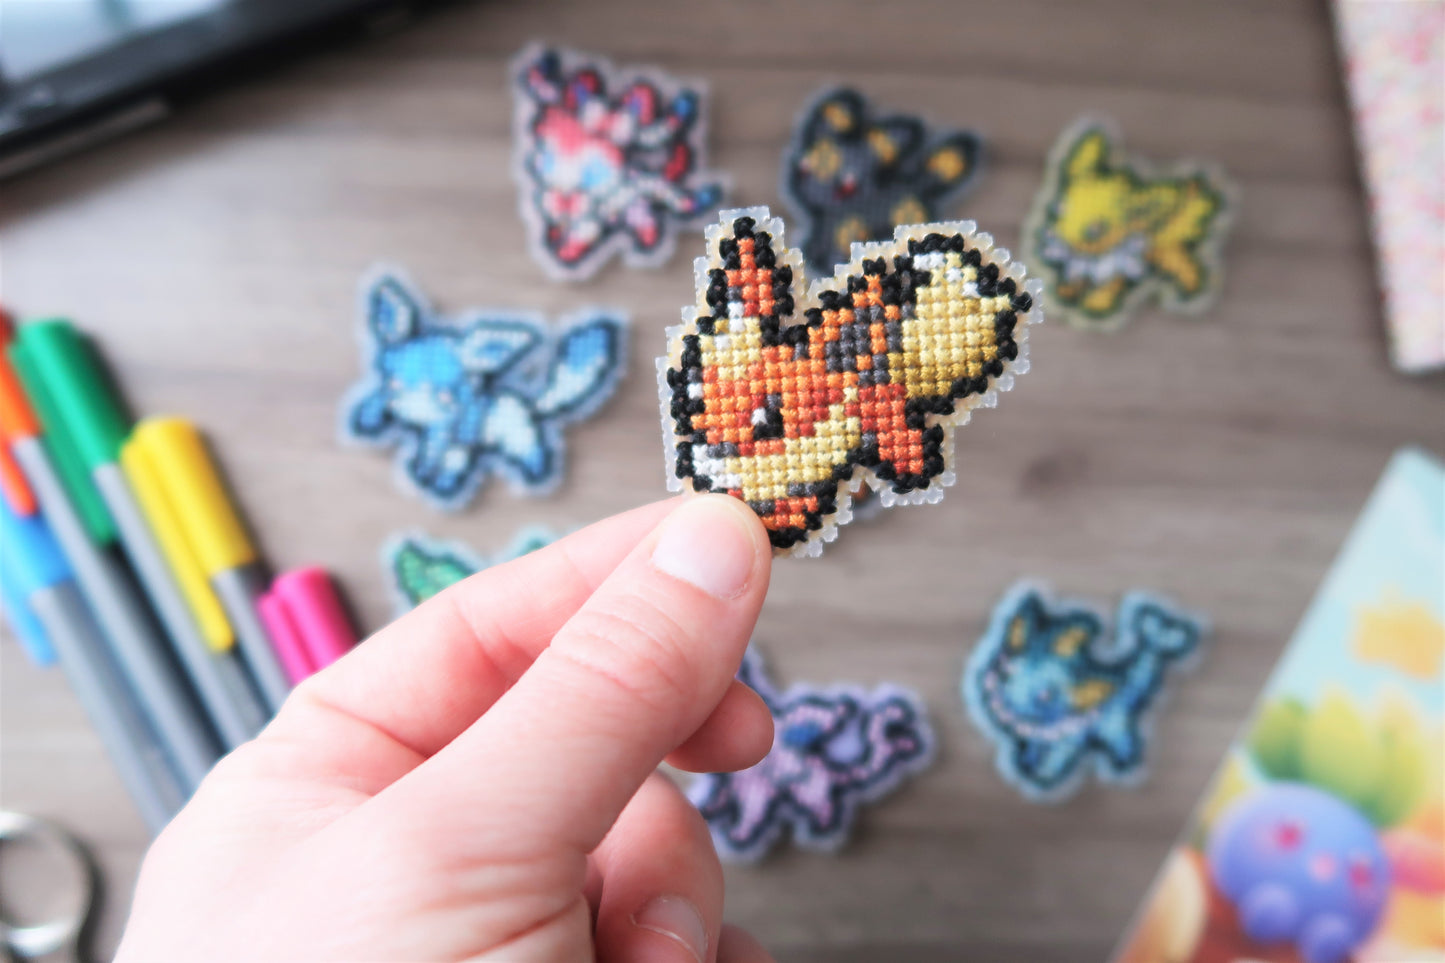 Pyroli, Aquali et Voltali de Pokémon - Kit de magnet en point de croix